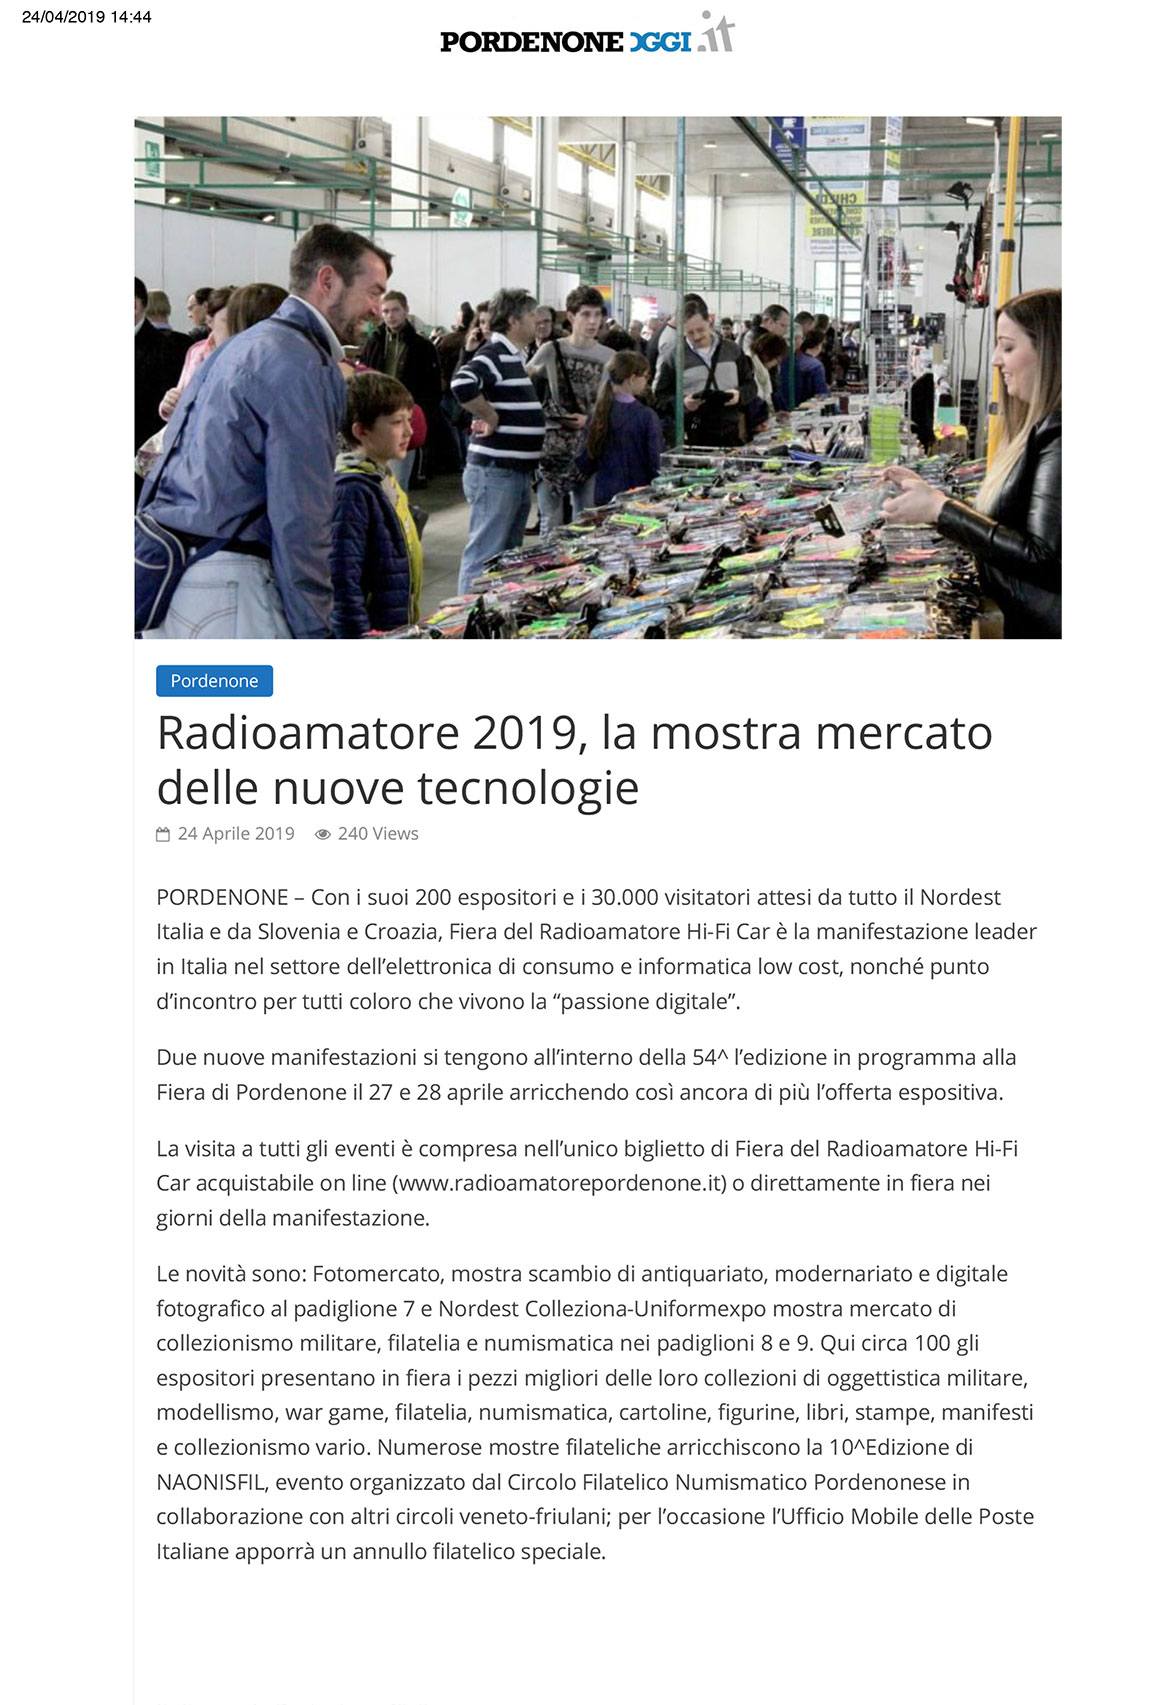 PordenoneOggi 24052019 Rassegna Stampa Radioamatore Fiera 2019